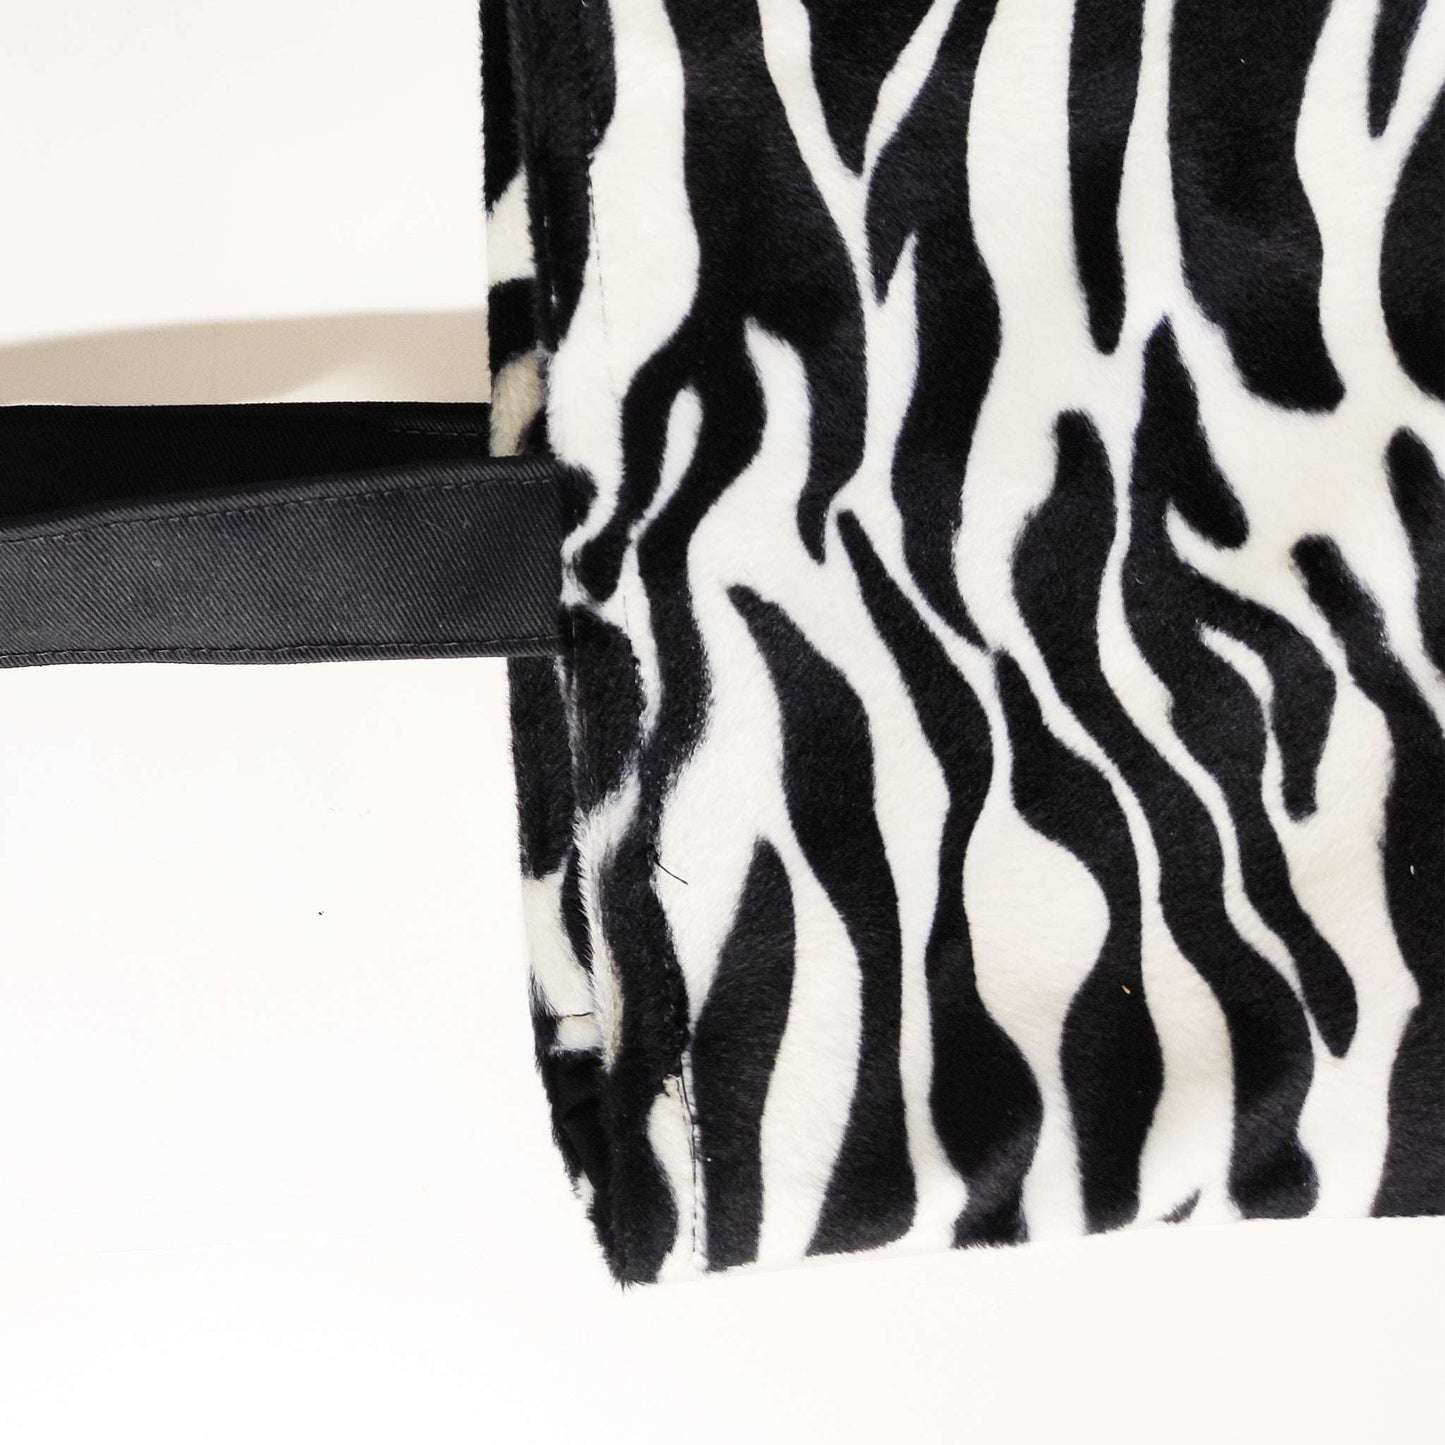 Zebra Fellimitat in Schwarz und weiß,  kombiniert mit türkis Lederimitat in Krokodil Optik! Eine bequeme und schöne Tragetasche für den Alltag!